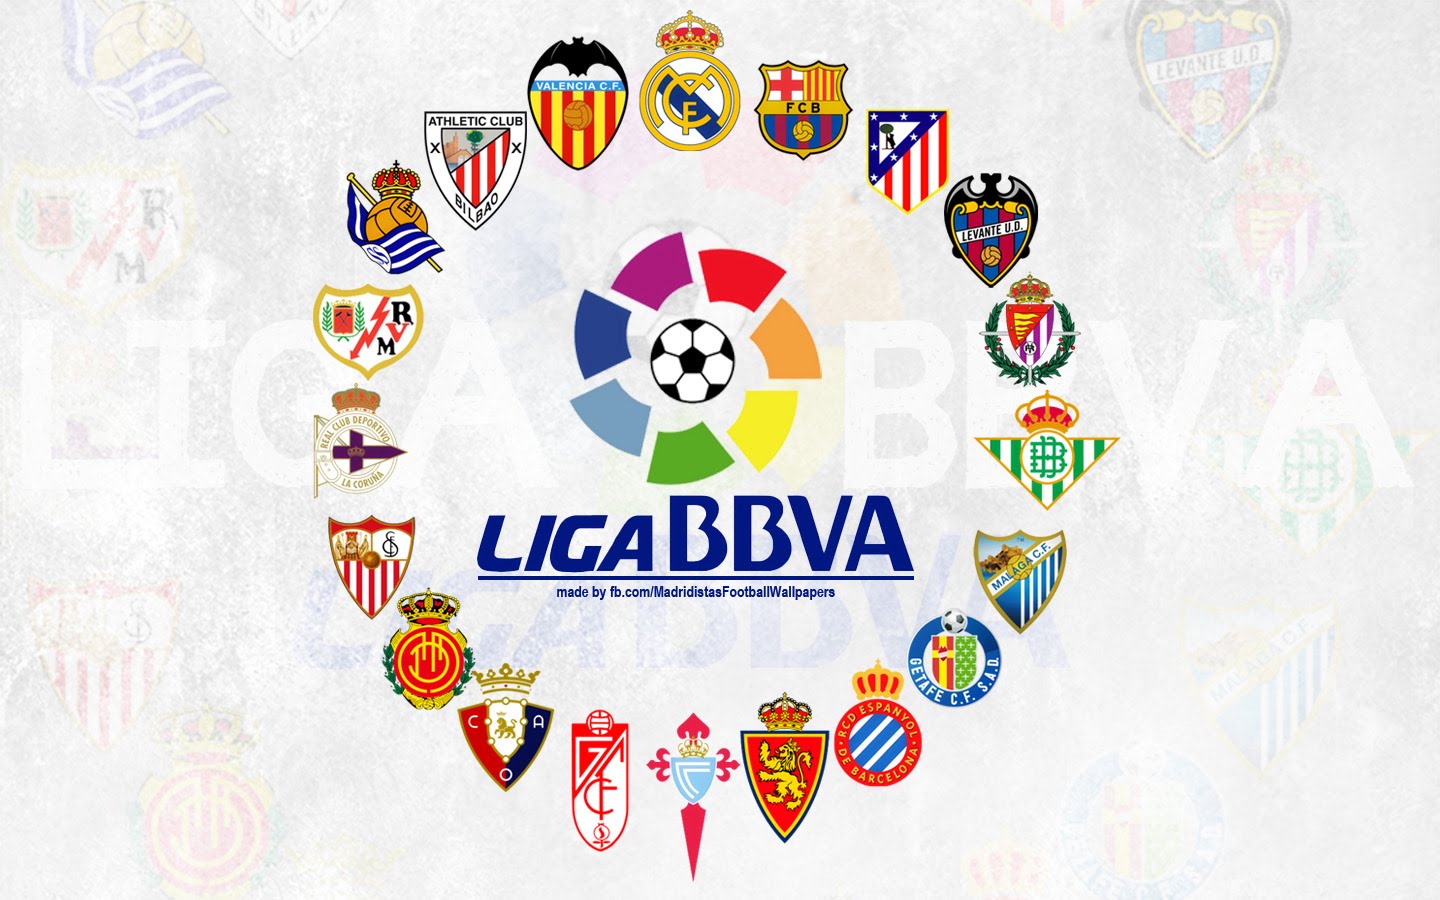 Panduan Taruhan Bola Liga Spanyol: Analisis Mendalam untuk Kemenangan Tepat Waktu